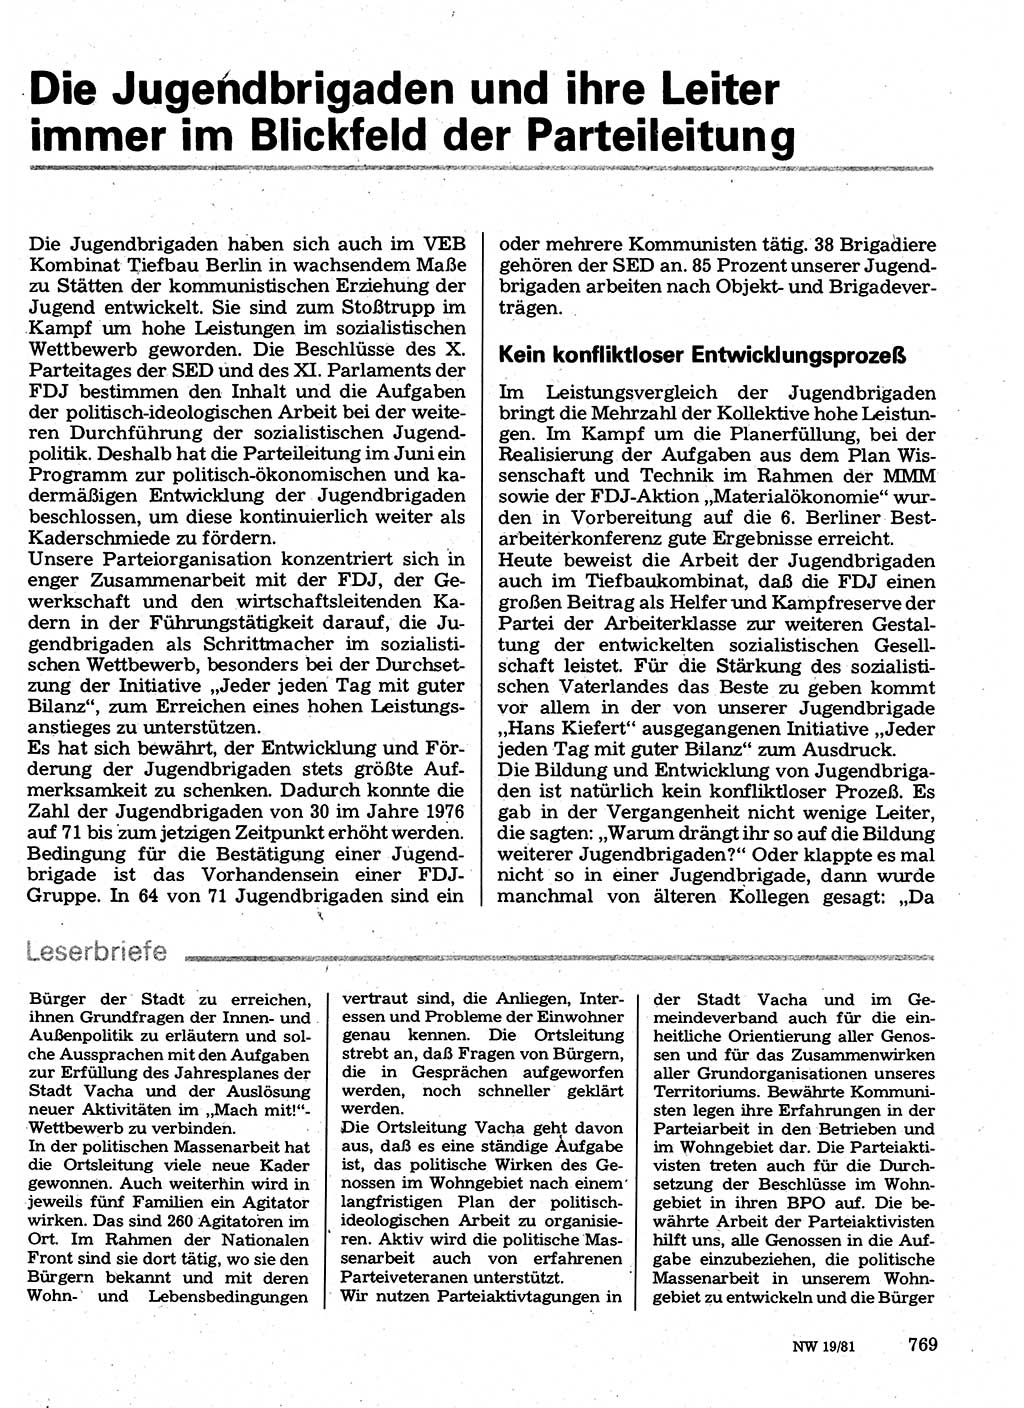 Neuer Weg (NW), Organ des Zentralkomitees (ZK) der SED (Sozialistische Einheitspartei Deutschlands) für Fragen des Parteilebens, 36. Jahrgang [Deutsche Demokratische Republik (DDR)] 1981, Seite 769 (NW ZK SED DDR 1981, S. 769)